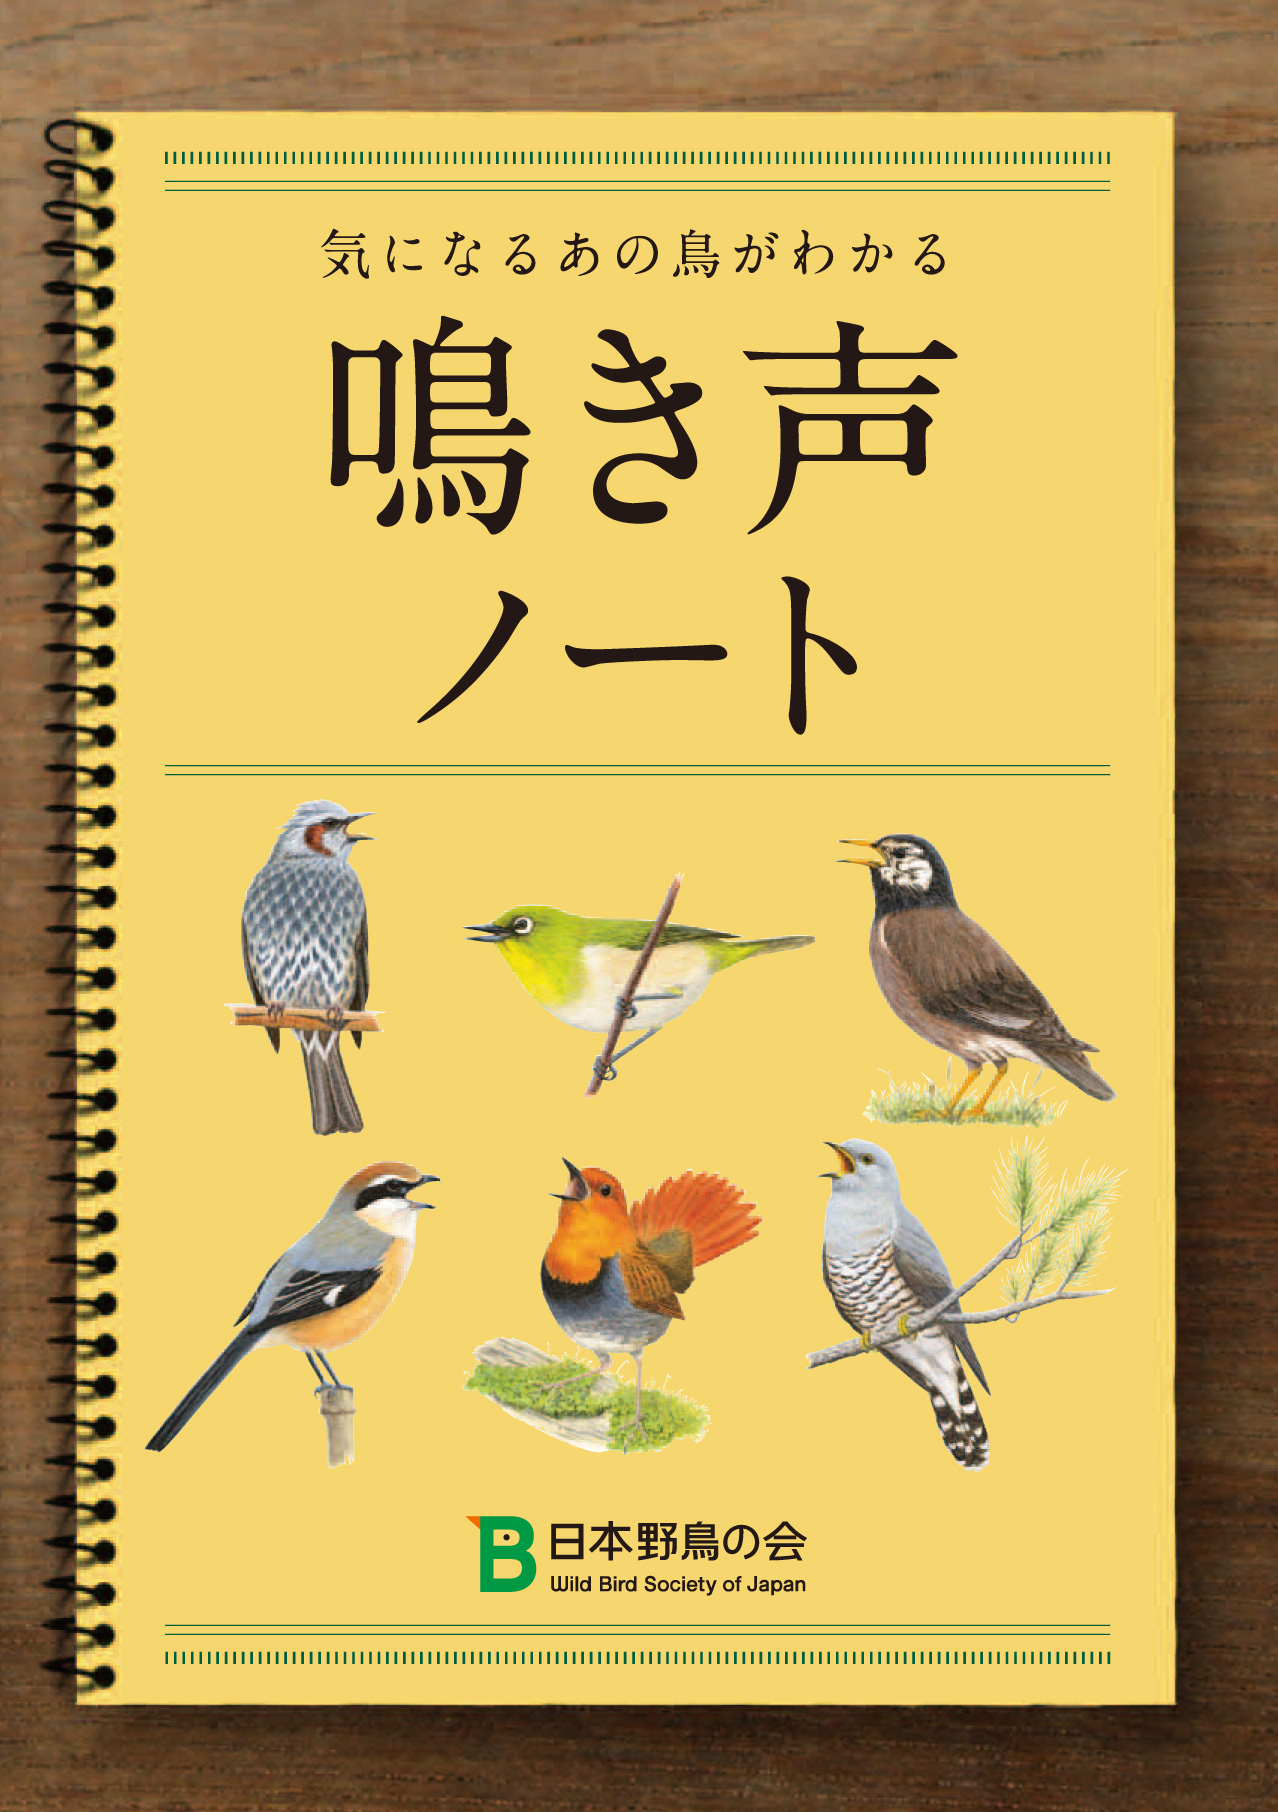 5 10 16はバードウィーク 愛鳥週間 気になるあの鳥がわかる 日本野鳥の会オリジナル小冊子 鳴き声 ノート 無料プレゼント 日本野鳥の会のプレスリリース